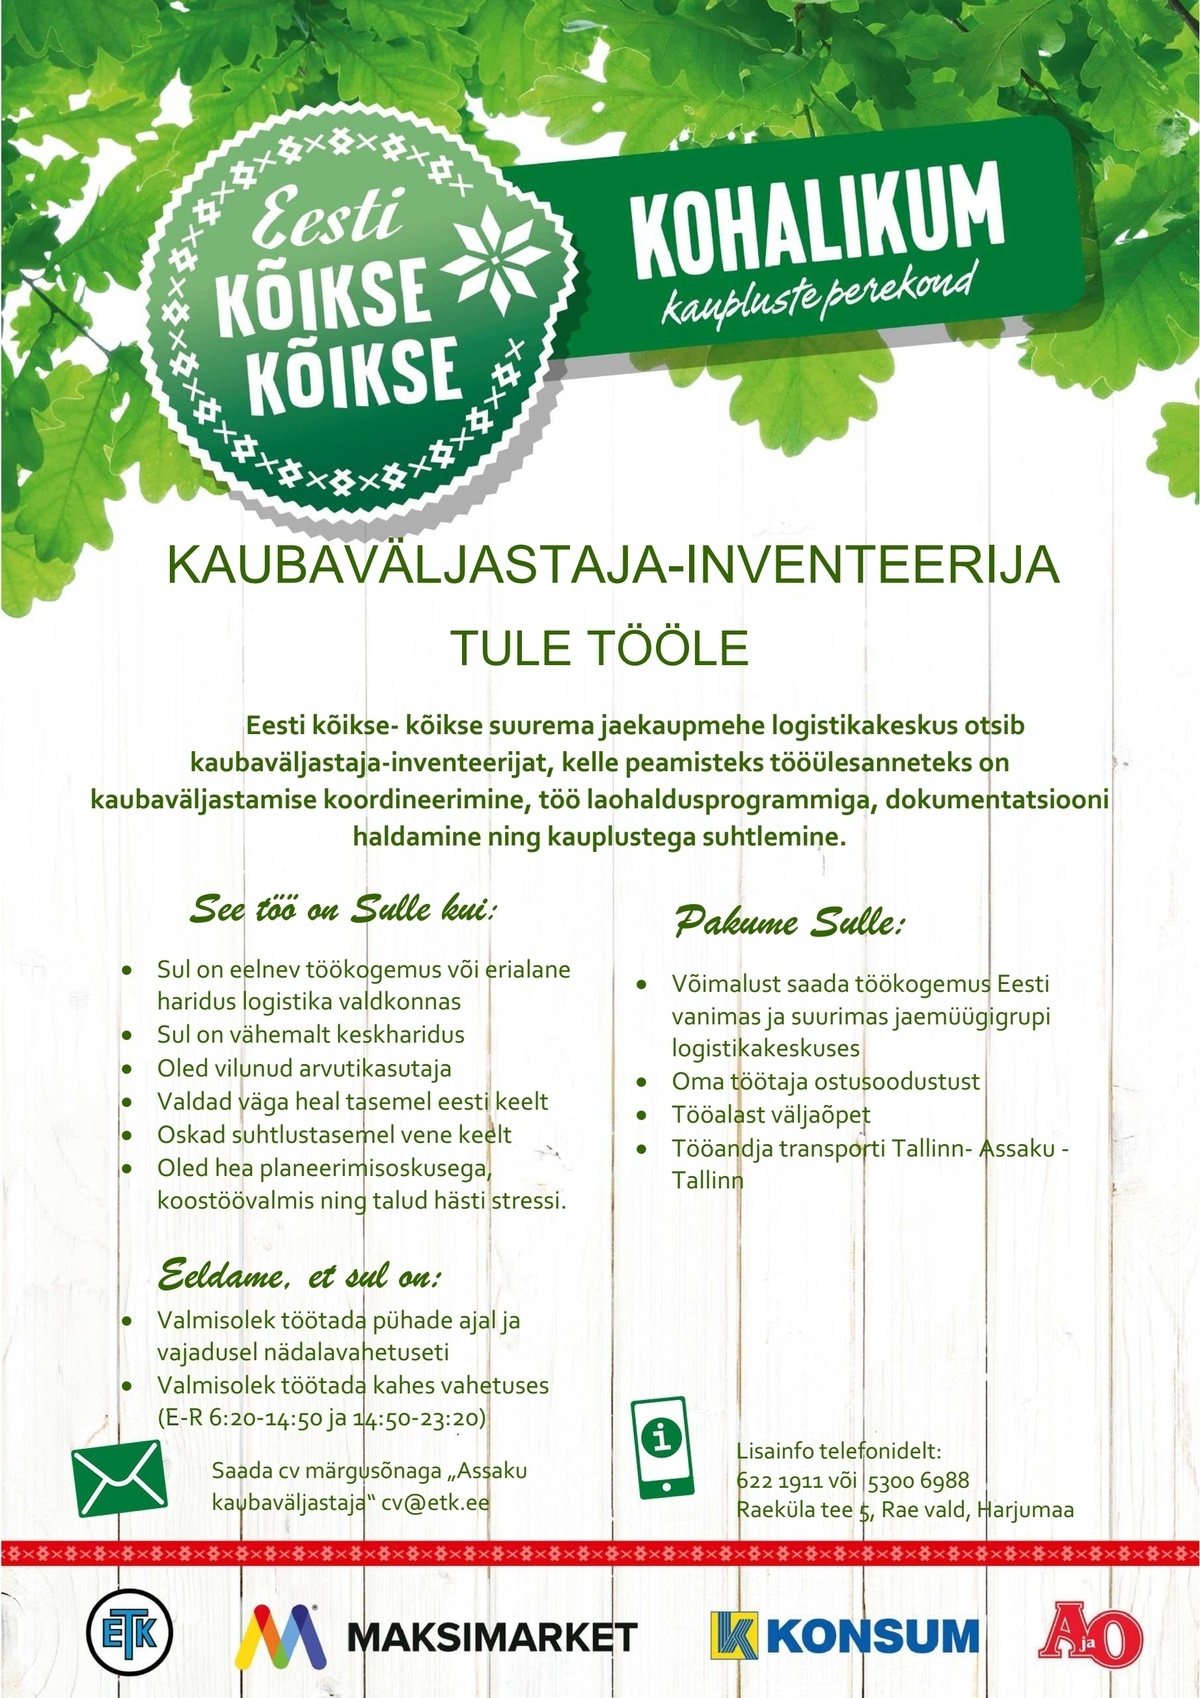 Eesti Tarbijateühistute Keskühistu Kaubaväljastaja-inventeerija (Assaku Logistikakeskus)